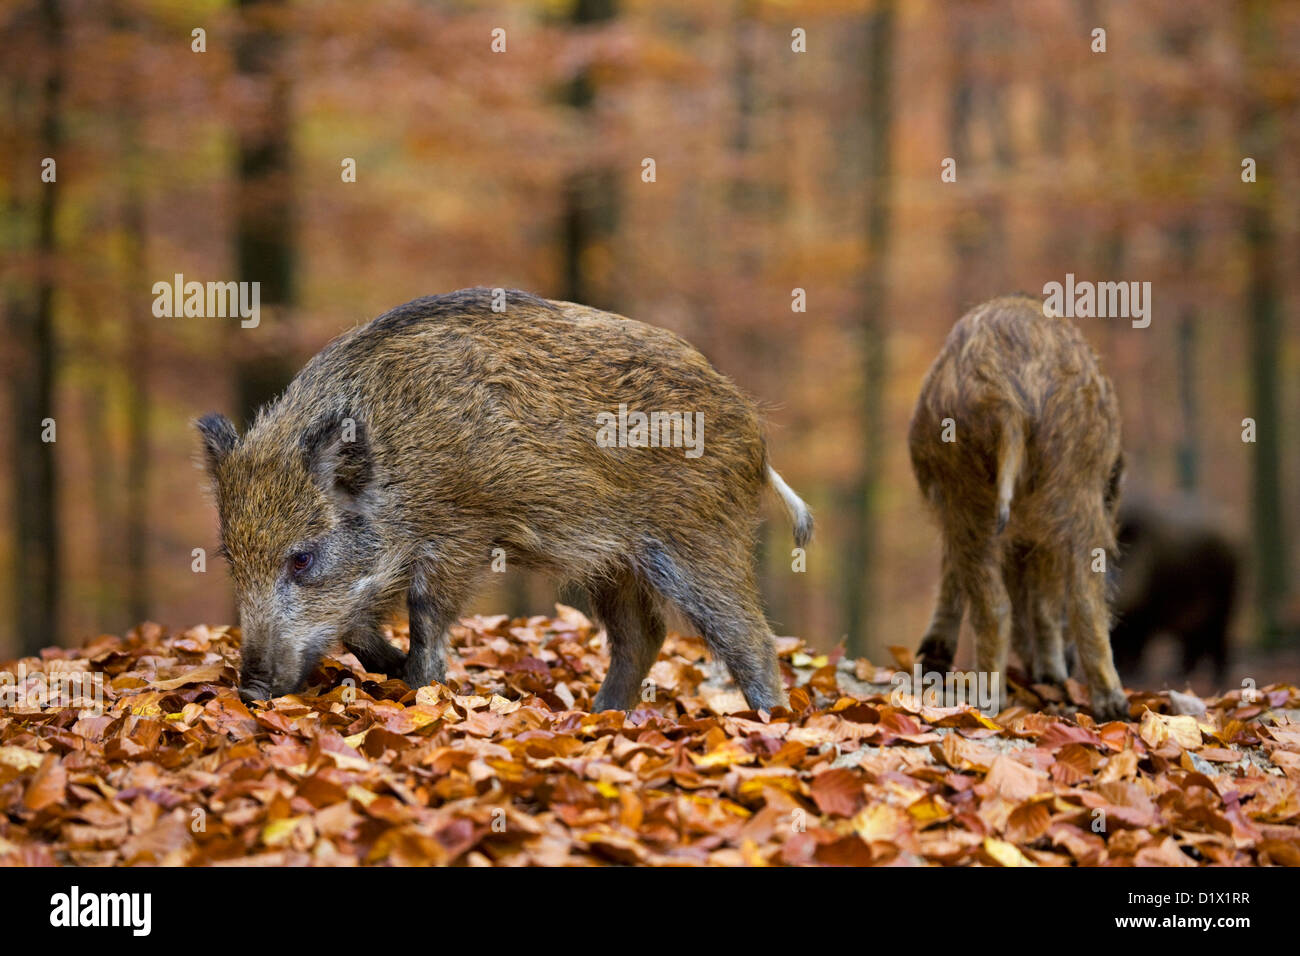 Le sanglier (Sus scrofa) la quête de nourriture avec son museau dans la litière en forêt d'automne, Ardennes Belges, Belgique Banque D'Images